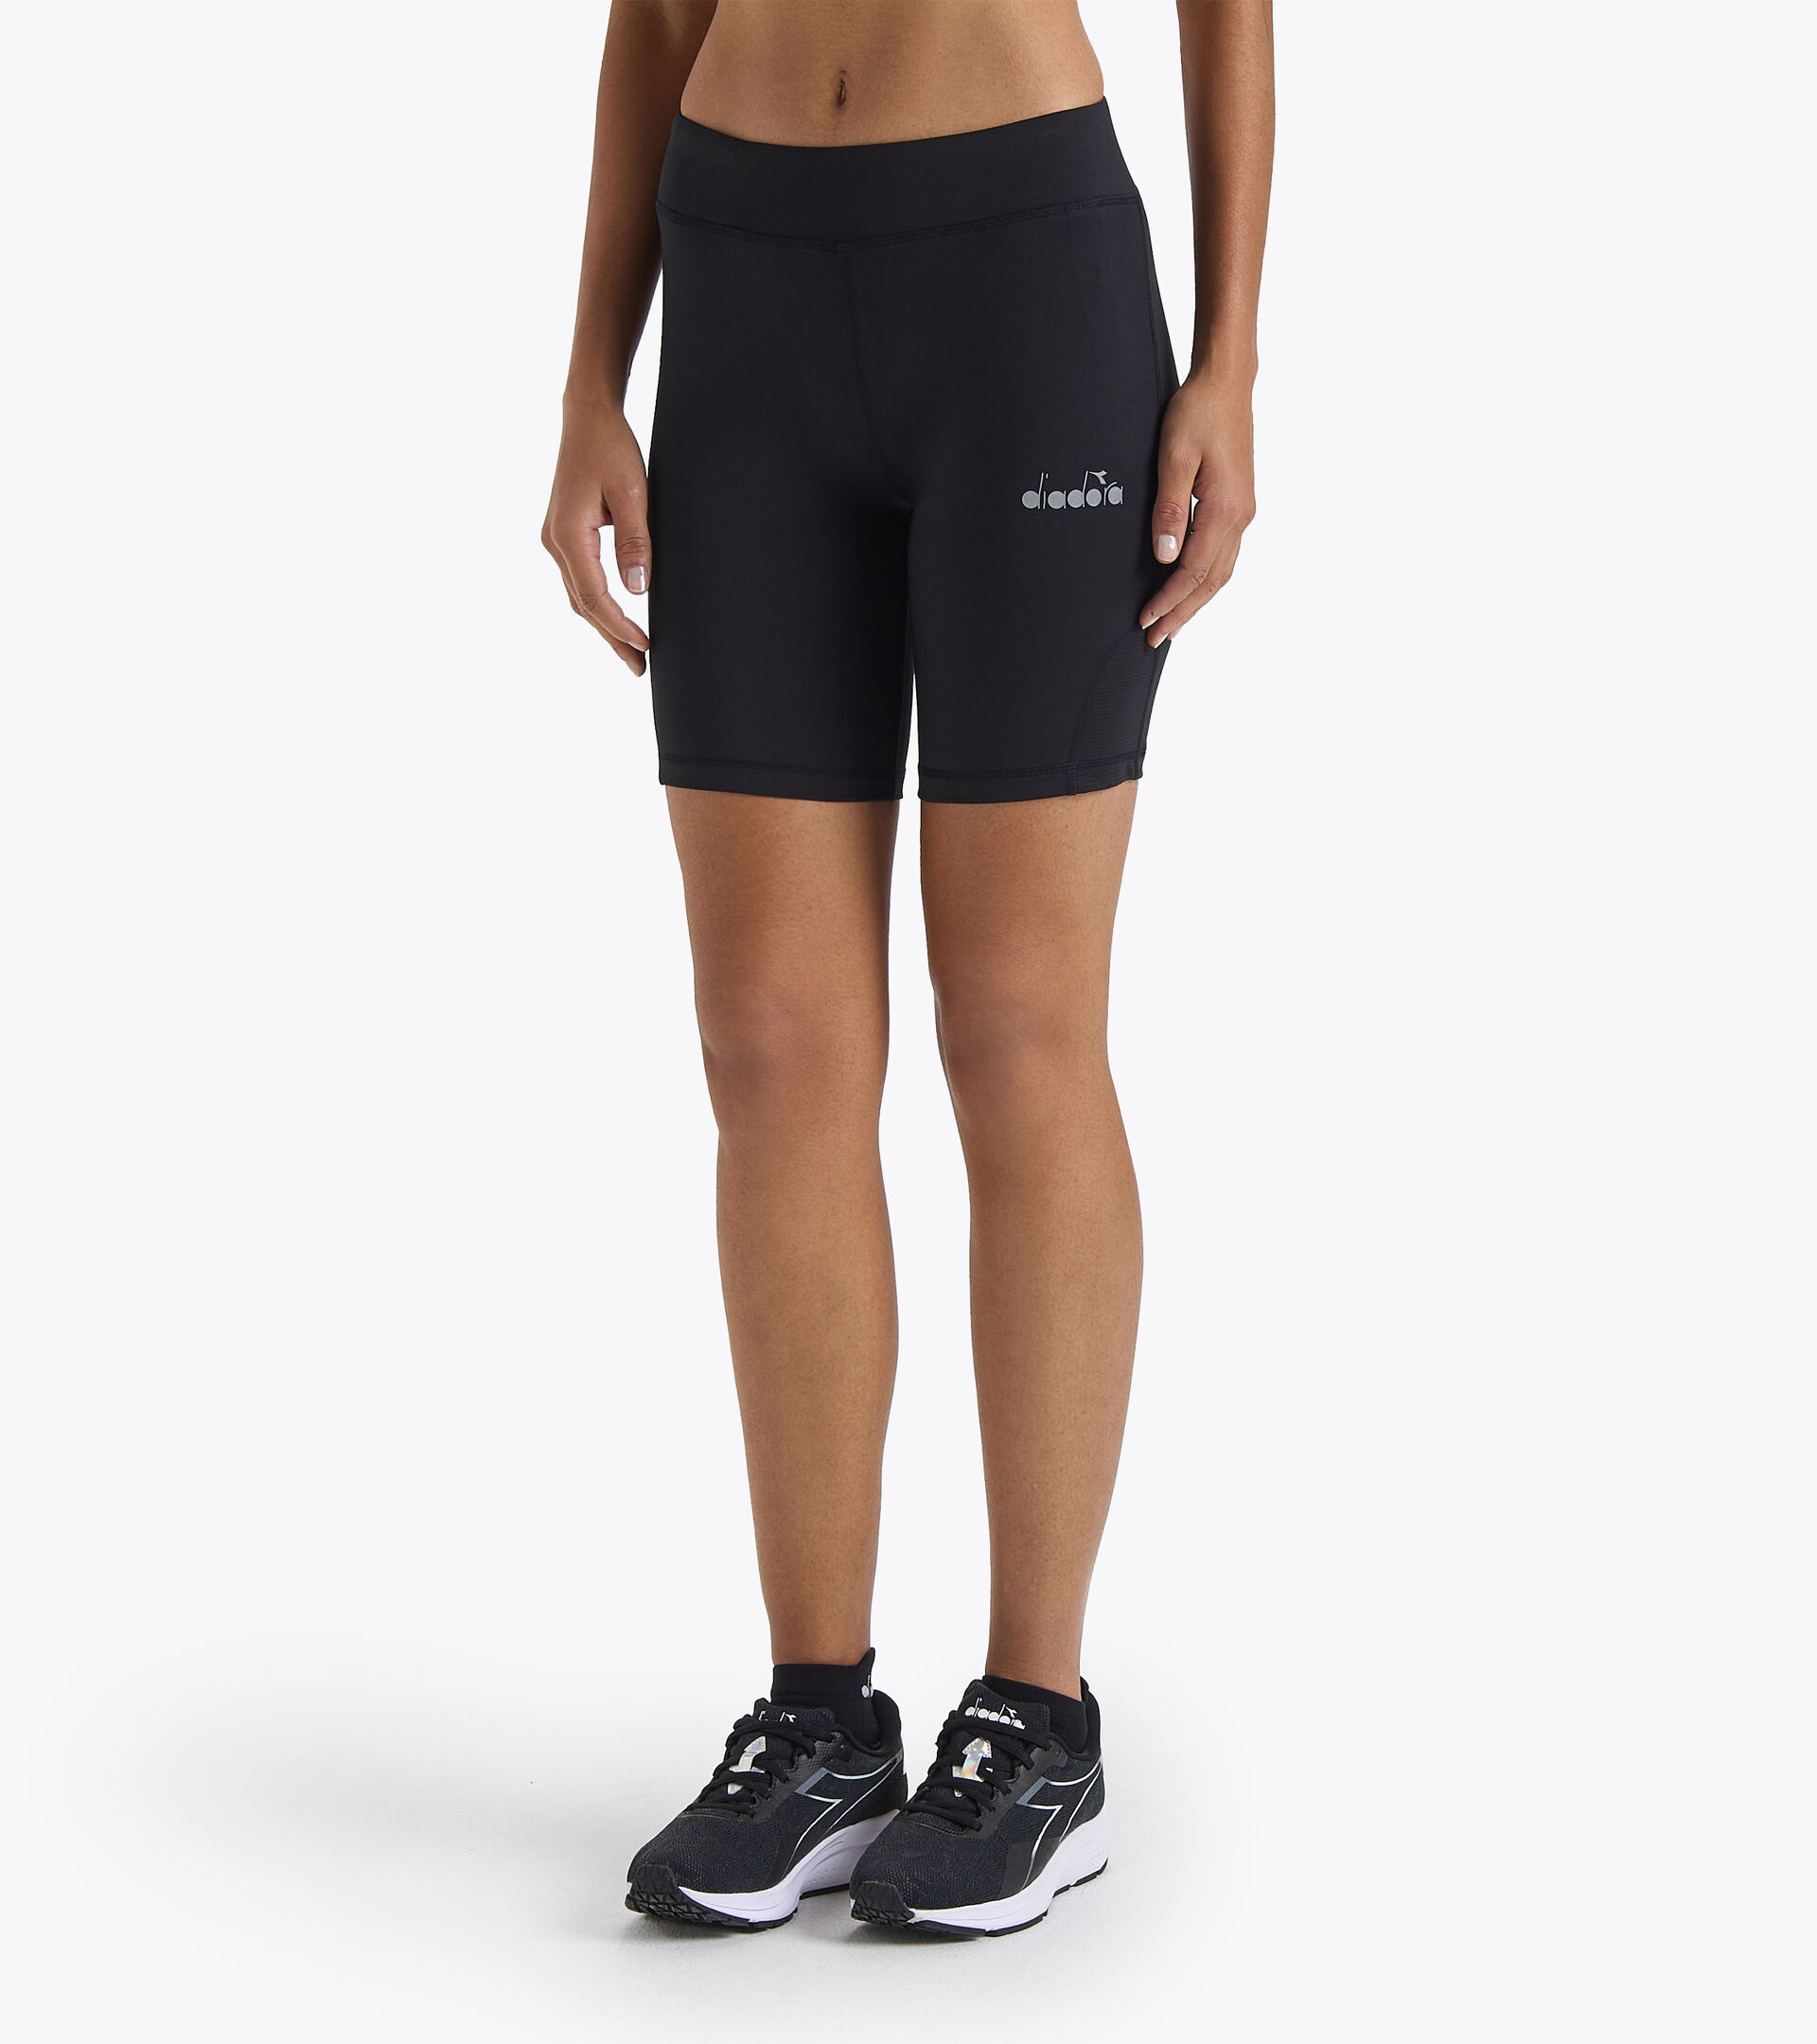 martillo invención Apuesta L. SHORT TIGHTS Shorts para correr - Mujer - Tienda en línea Diadora ES